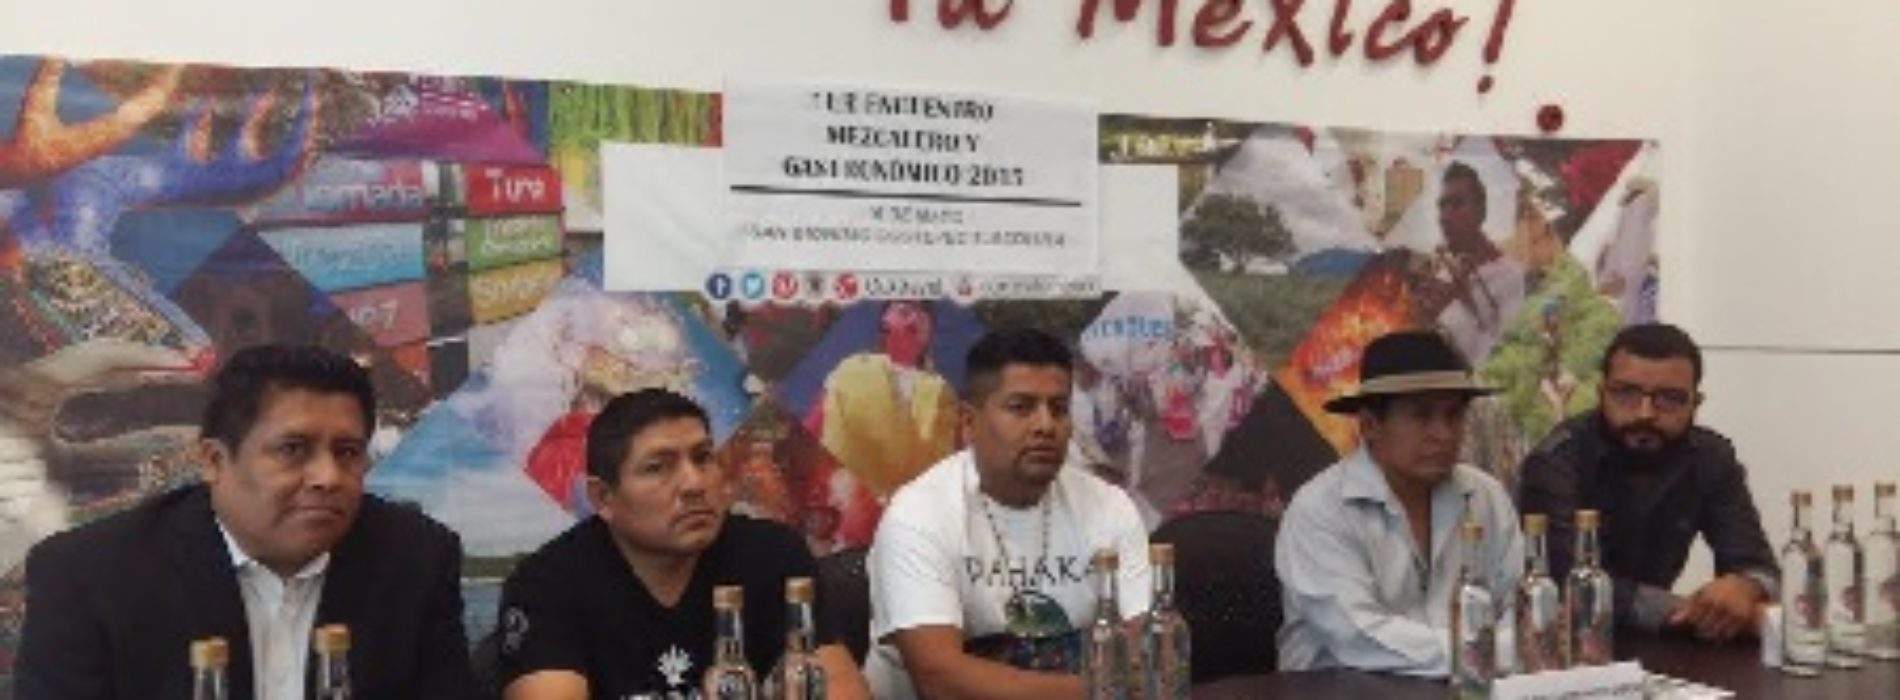 #Oaxaca #Ocotepec #mezcal #turismo En San Dionisio Ocotepec, el Primer Encuentro Mezcalero y Gastronómico 2015